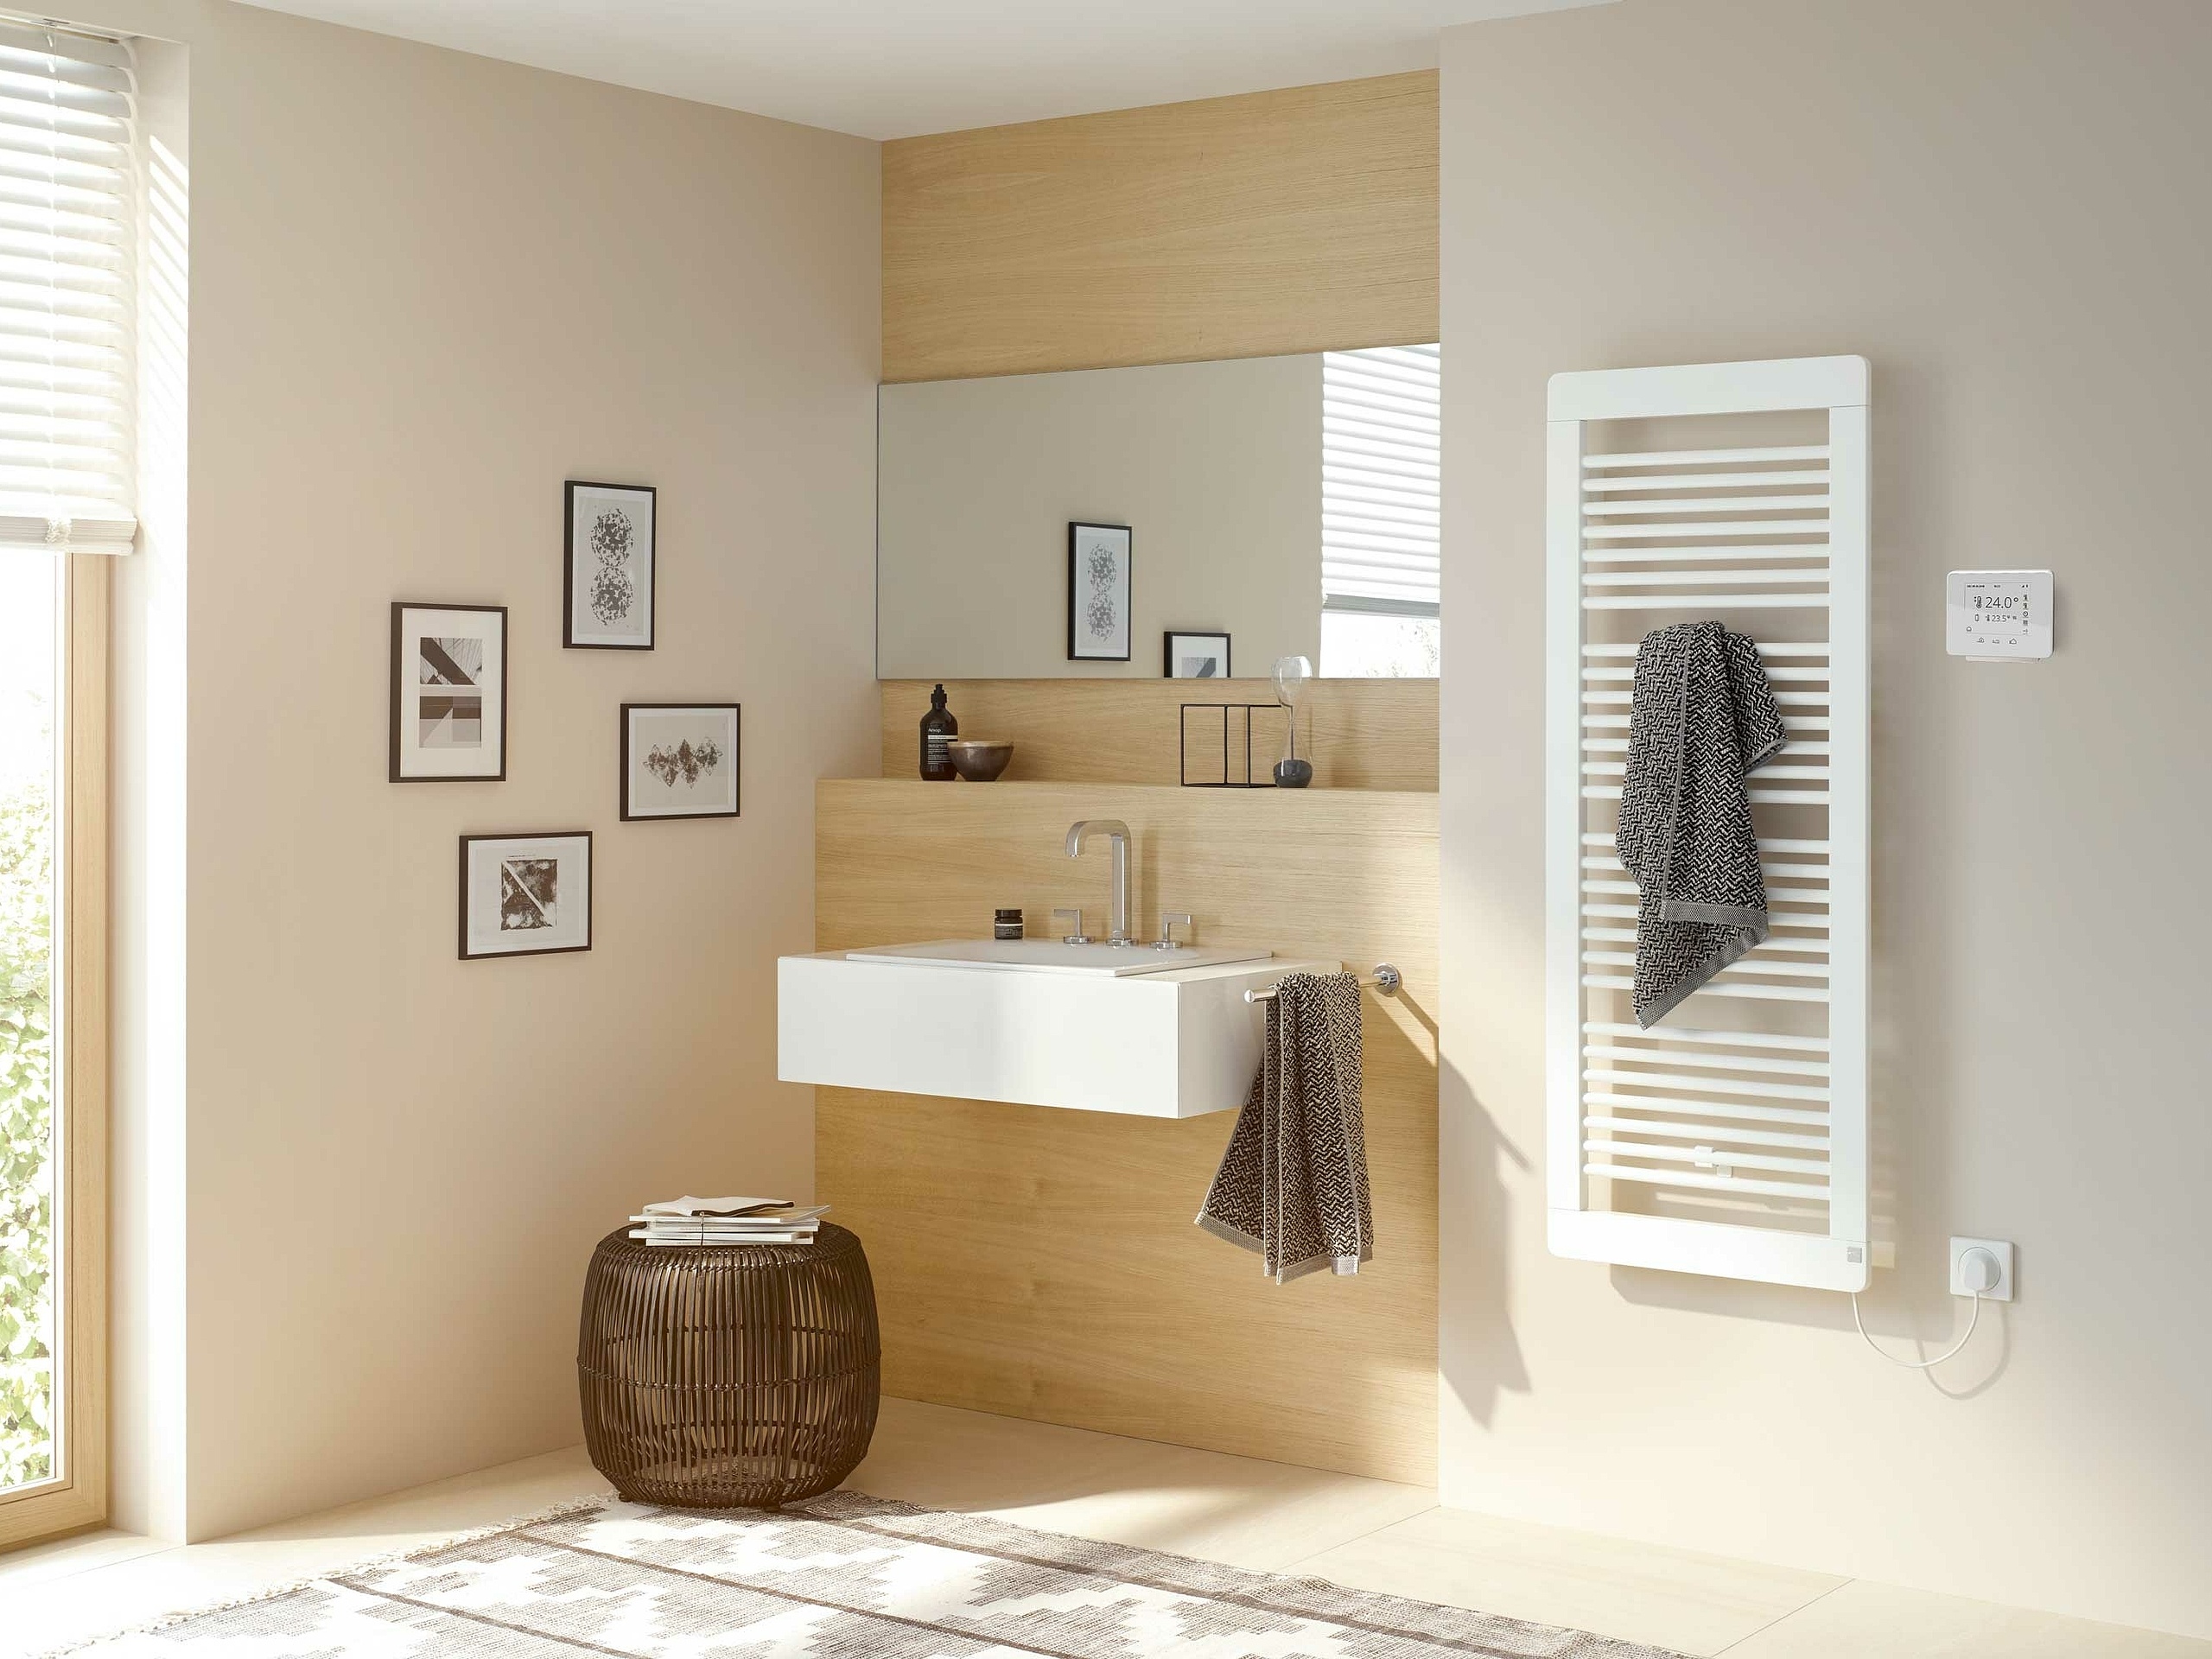 Grzejniki dekoracyjne i łazienkowe Kermi Credo plus są dostępne również jako grzejniki elektryczne.